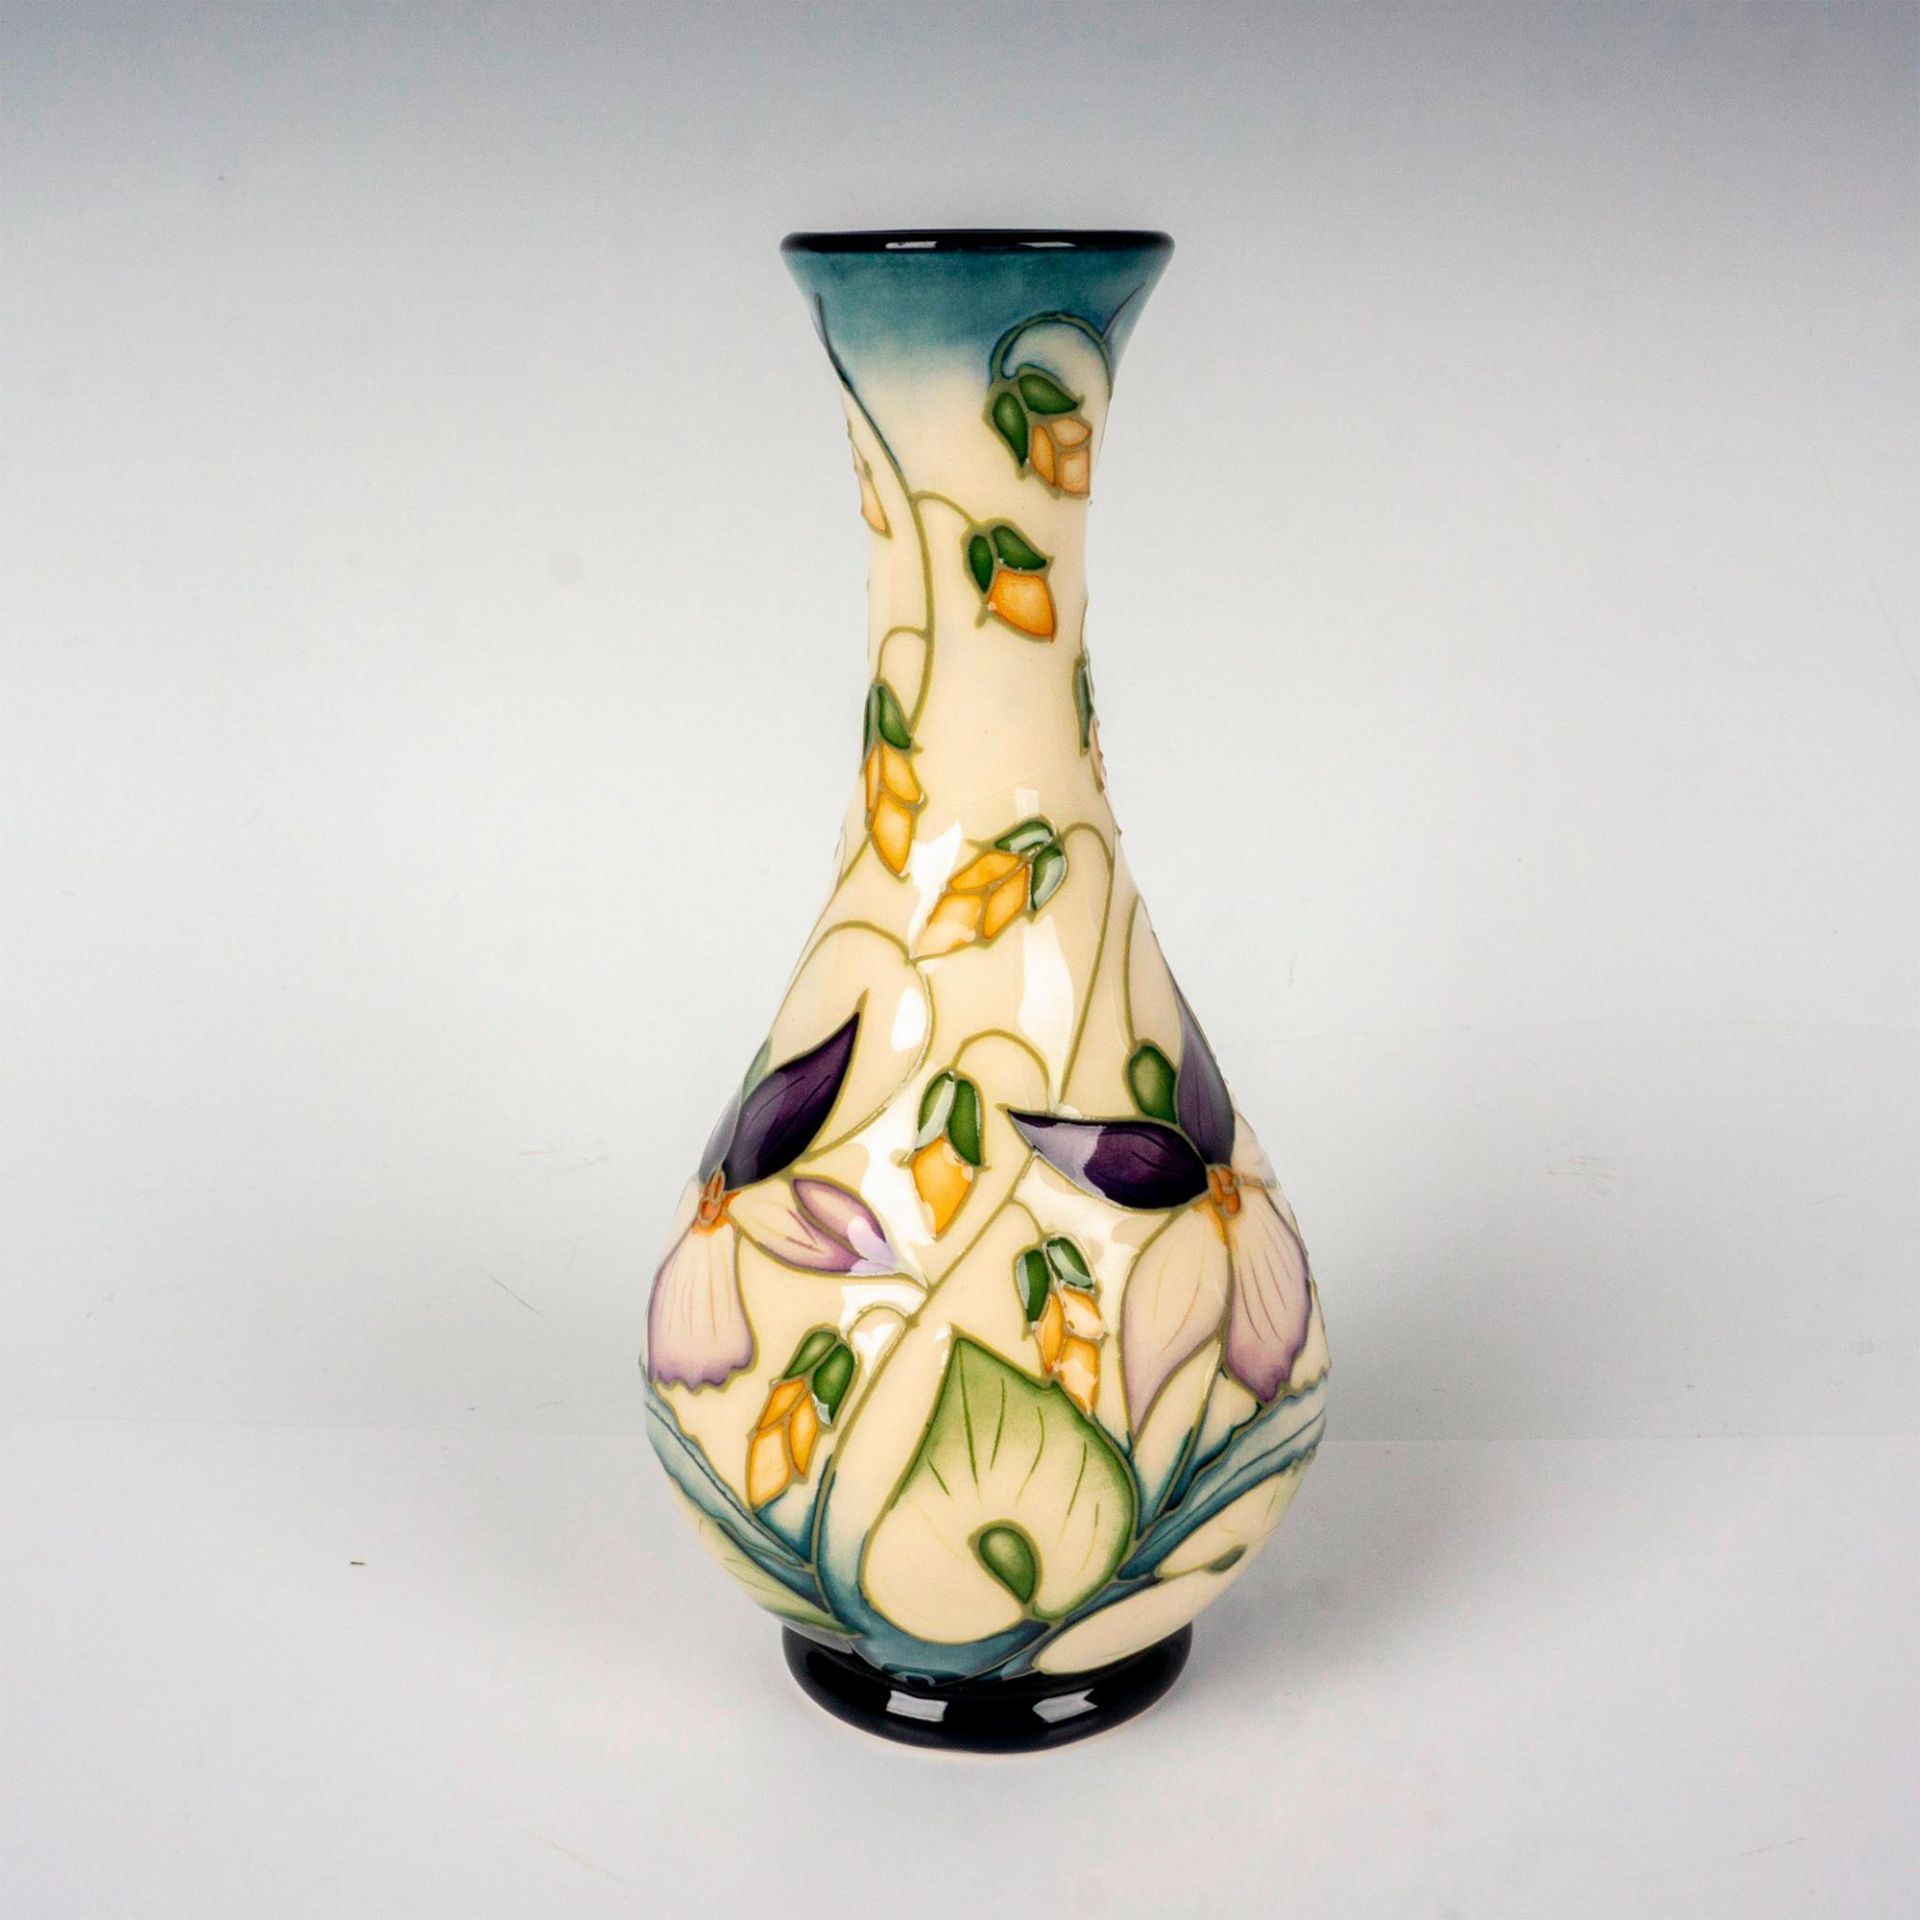 Moorcroft Pottery Sweet Thief Vase - Image 2 of 3